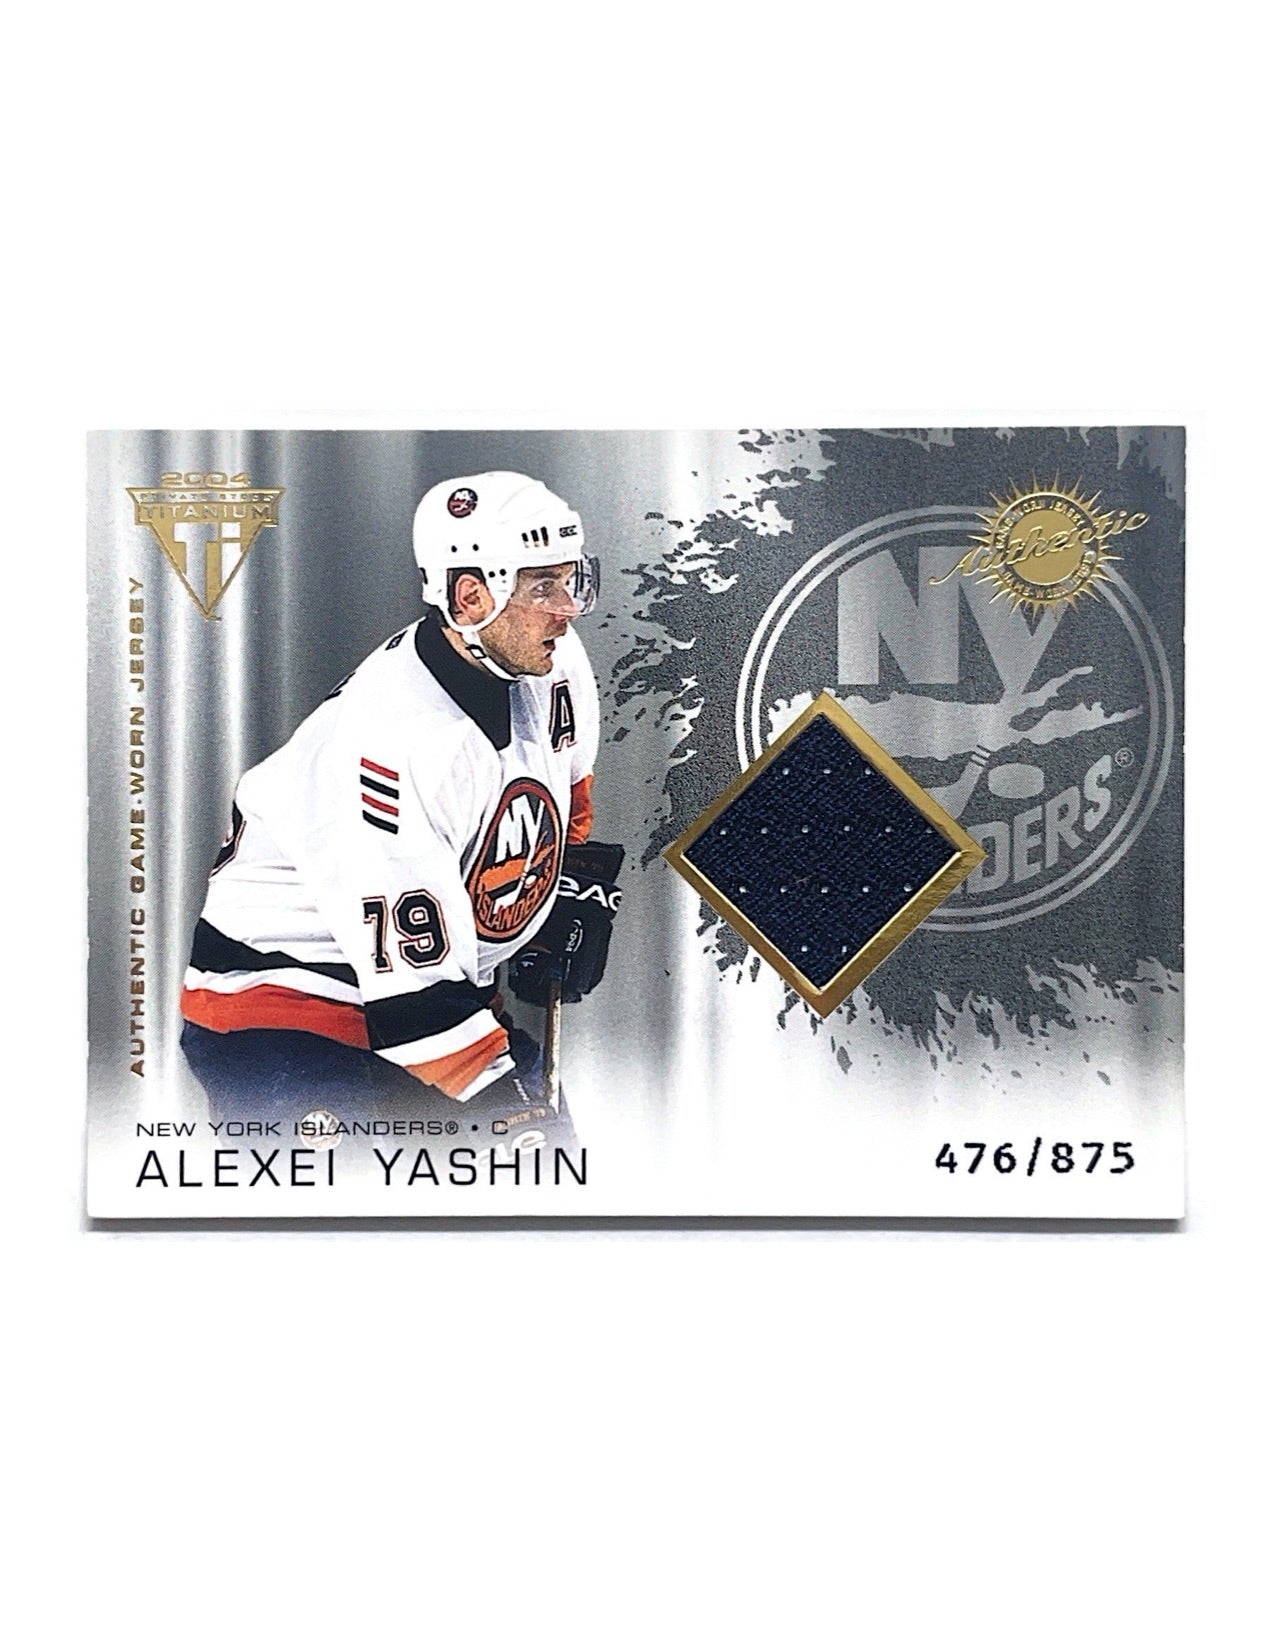 Alexei Yashin 2003-04 Private Stock Titanium Jersey #169 - 476/875